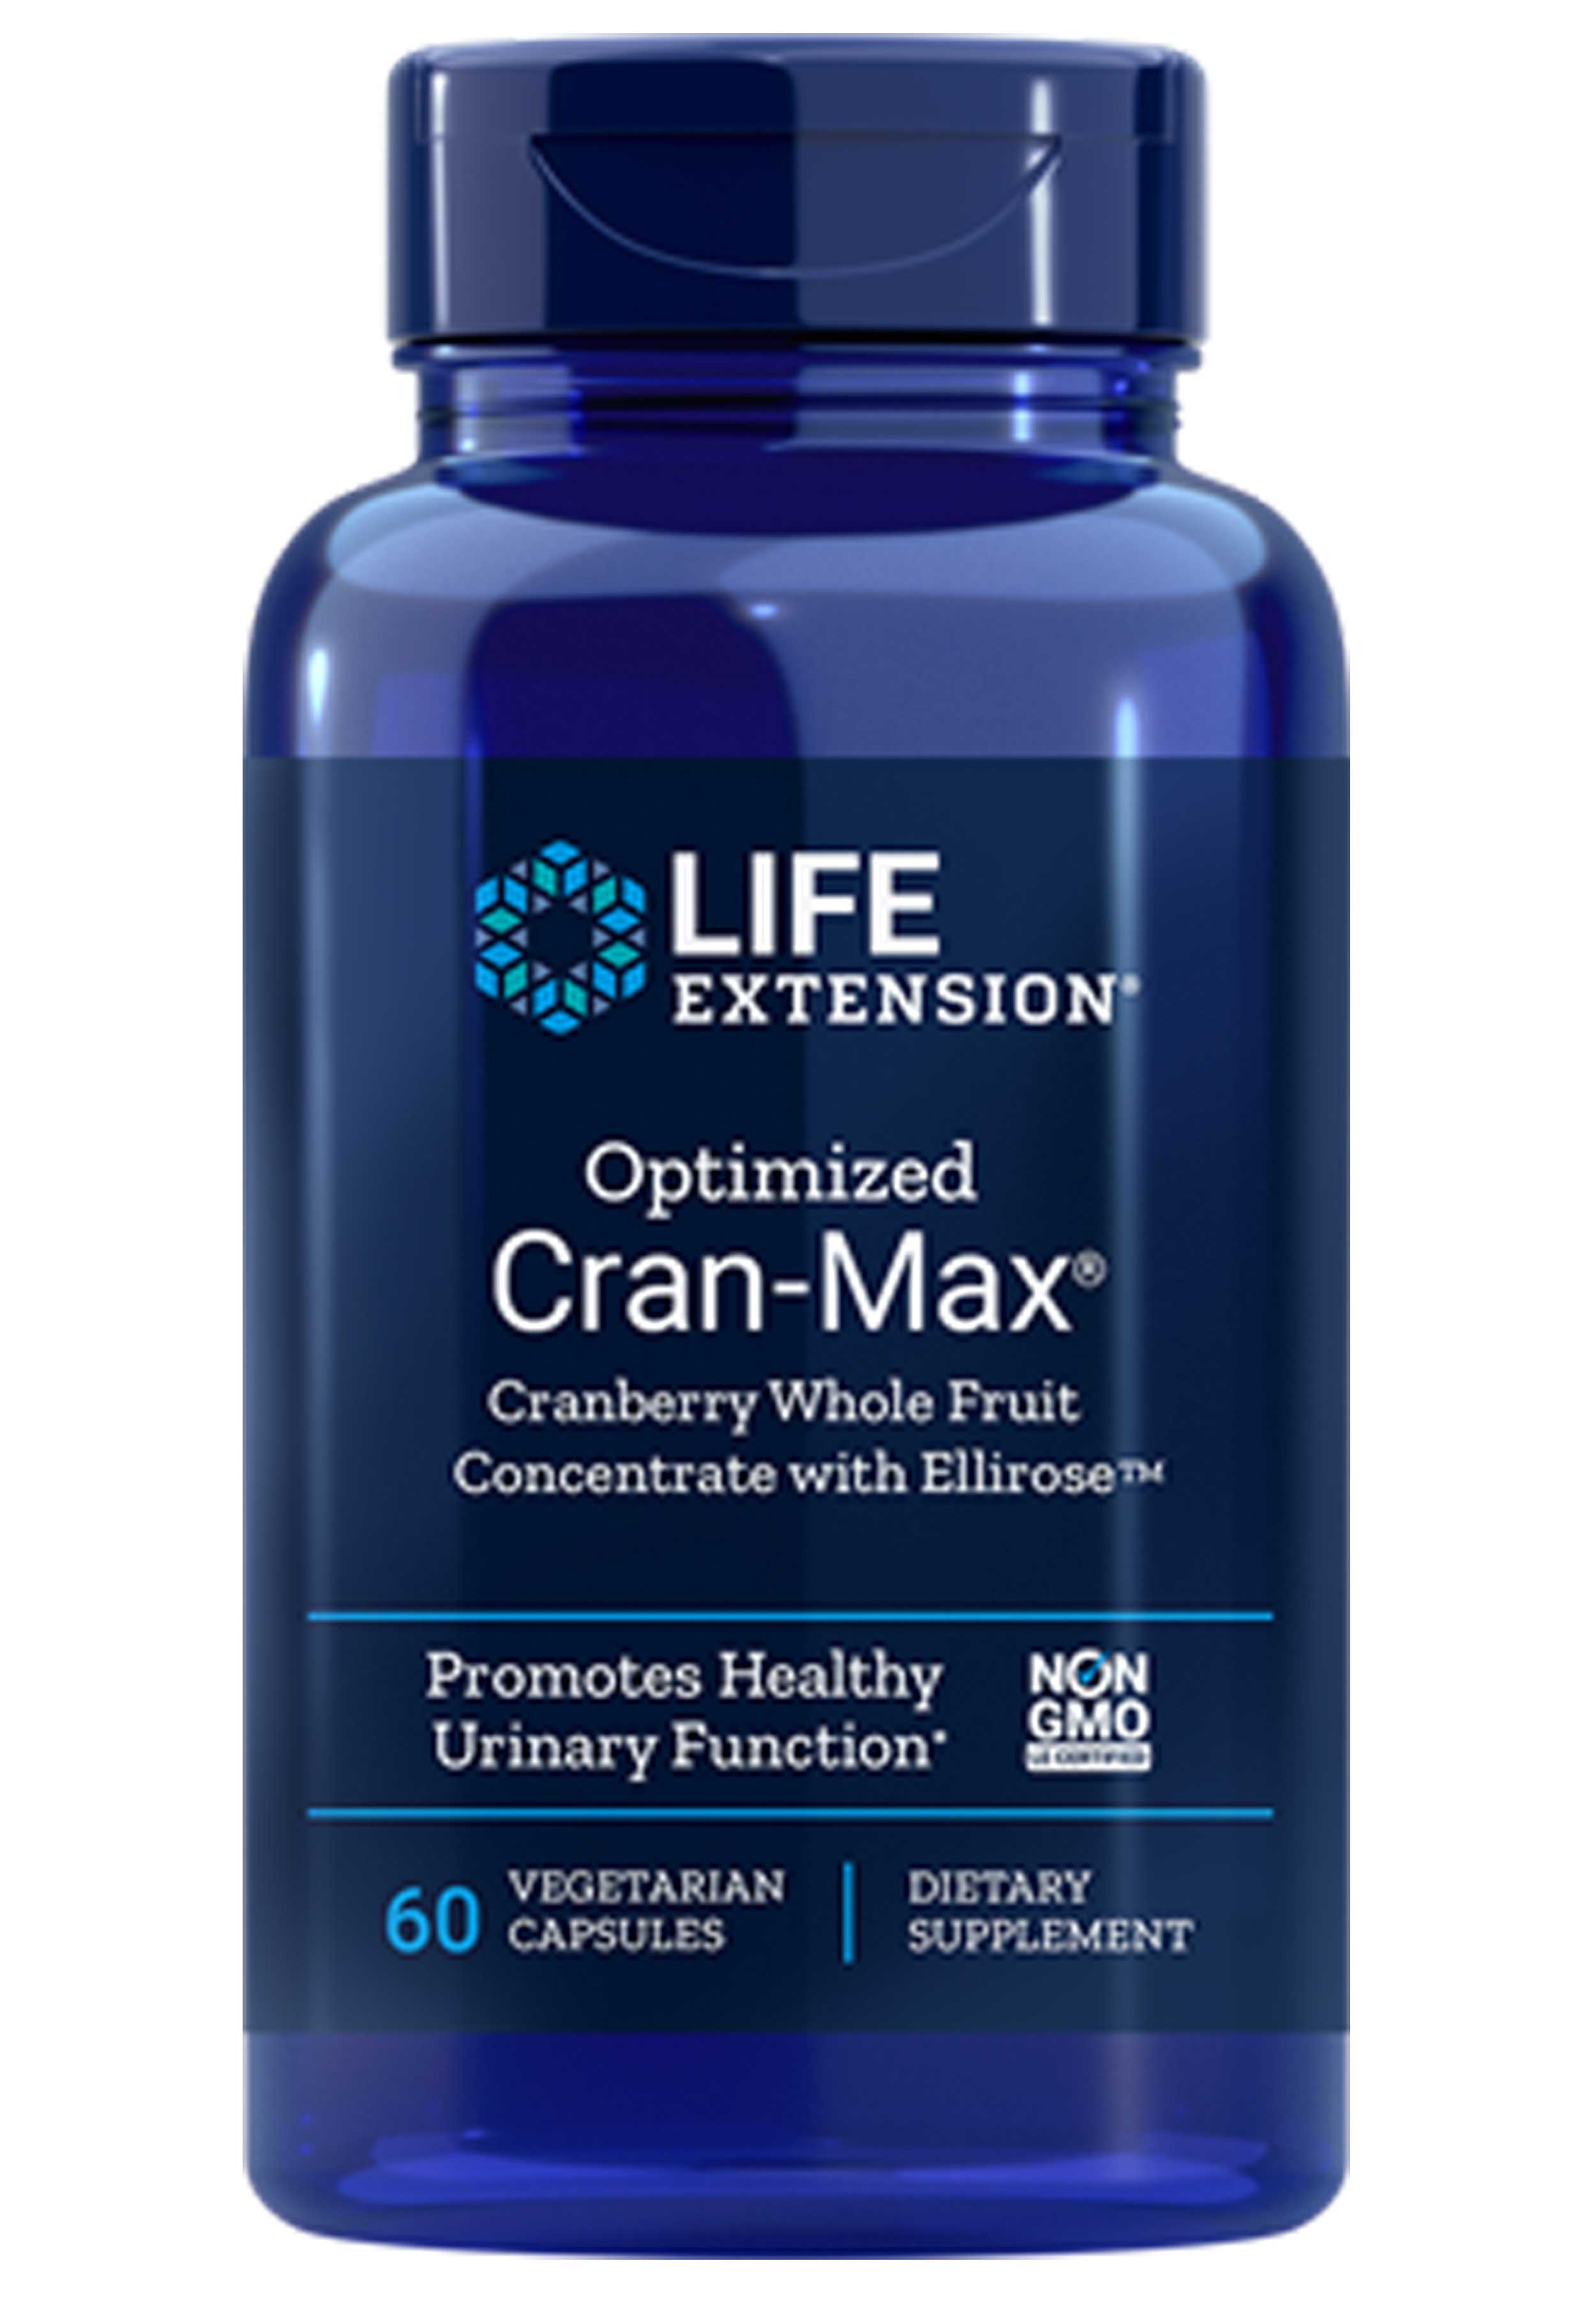 Life Extension Optimized Cran-Max